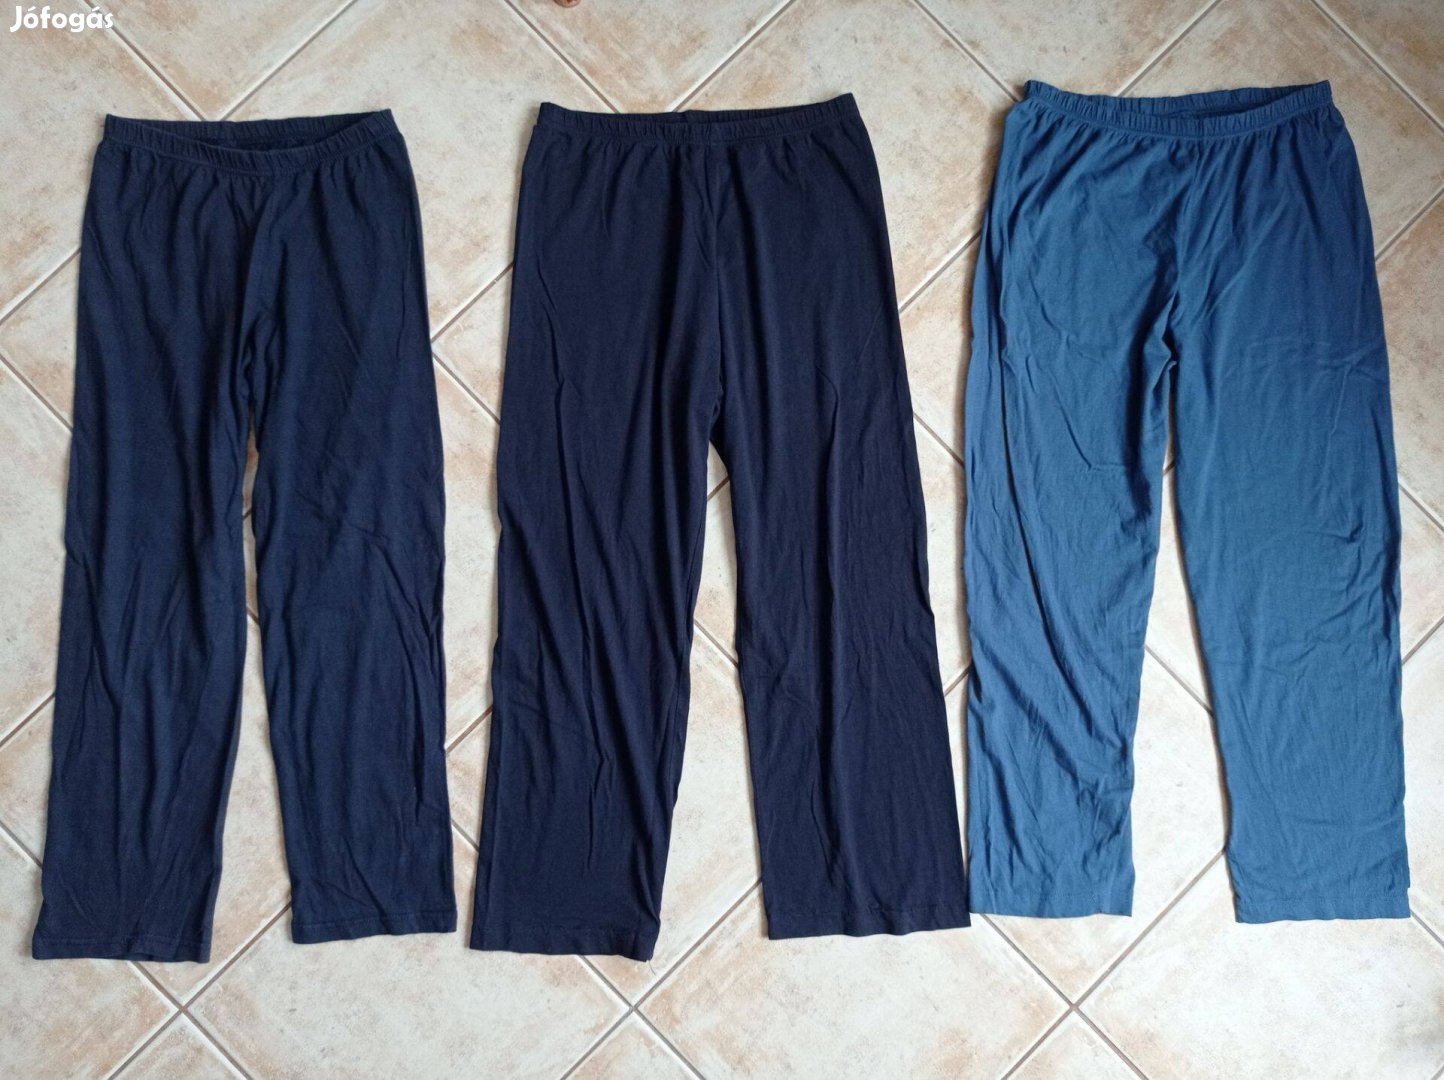 152-164-es pamut pizsama alsók csomagban, teljes hosszuk 93-94 -95 cm